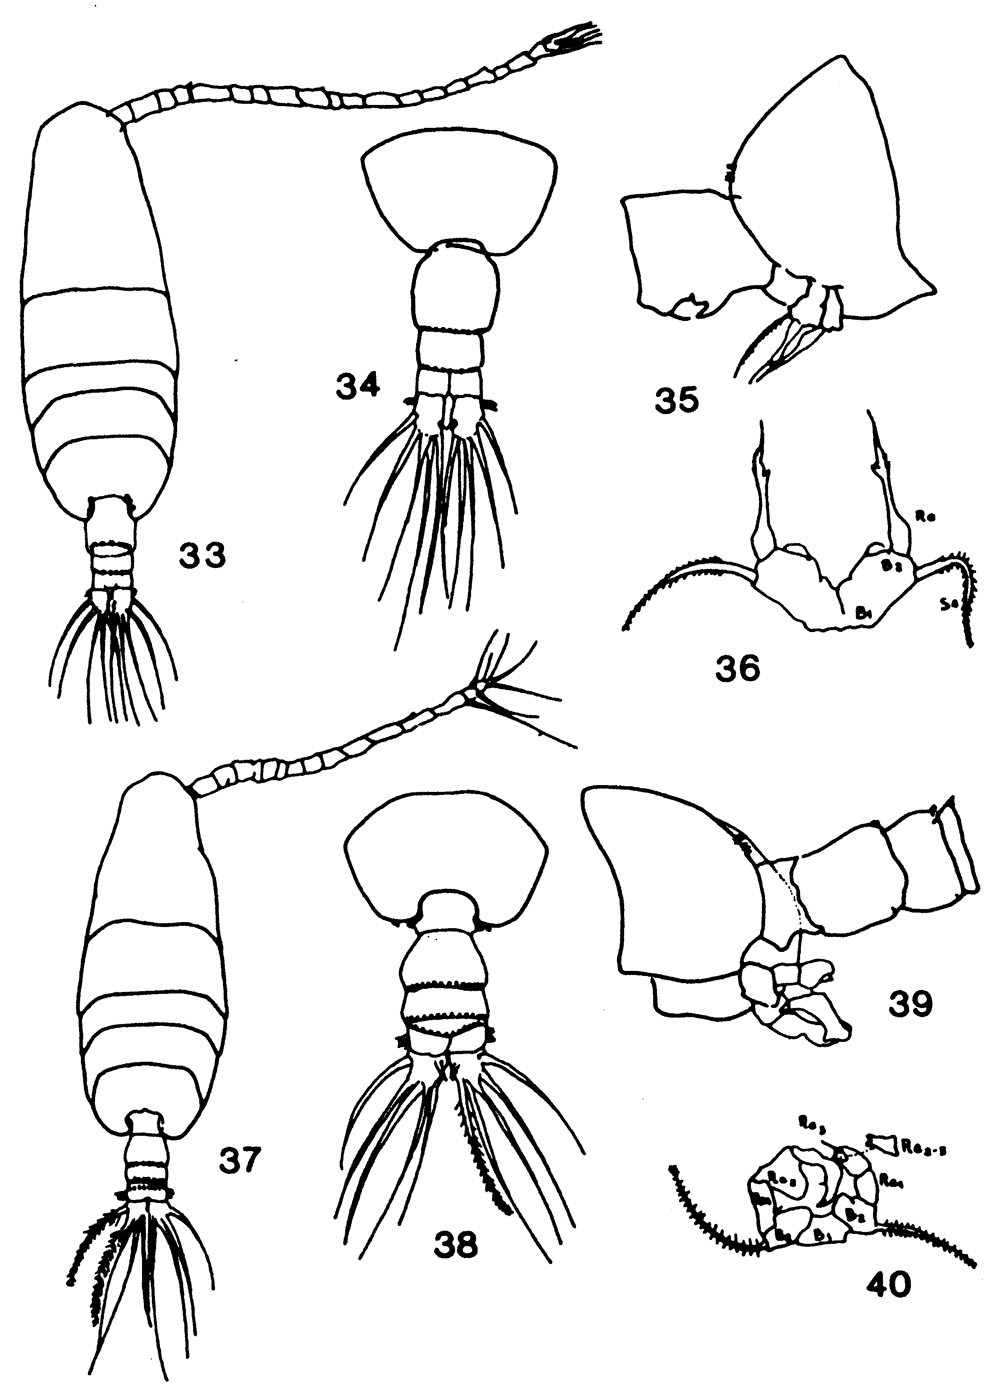 Espèce Acartia (Acanthacartia) tonsa - Planche 27 de figures morphologiques